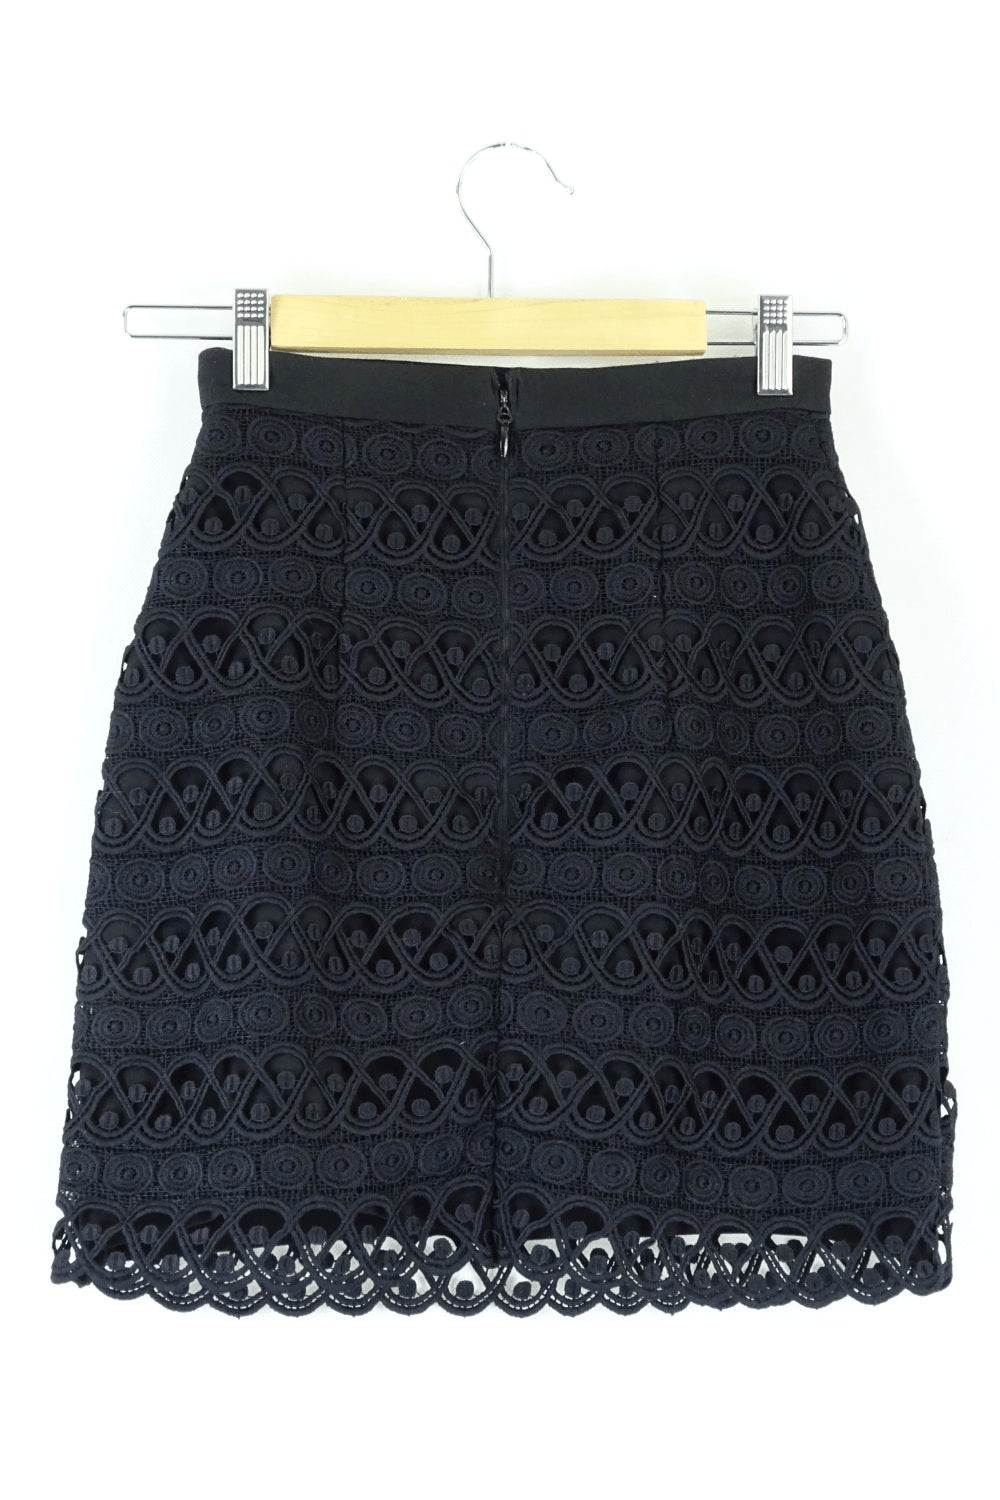 Kookai Lace Black Skirt 34 ( AU 6)